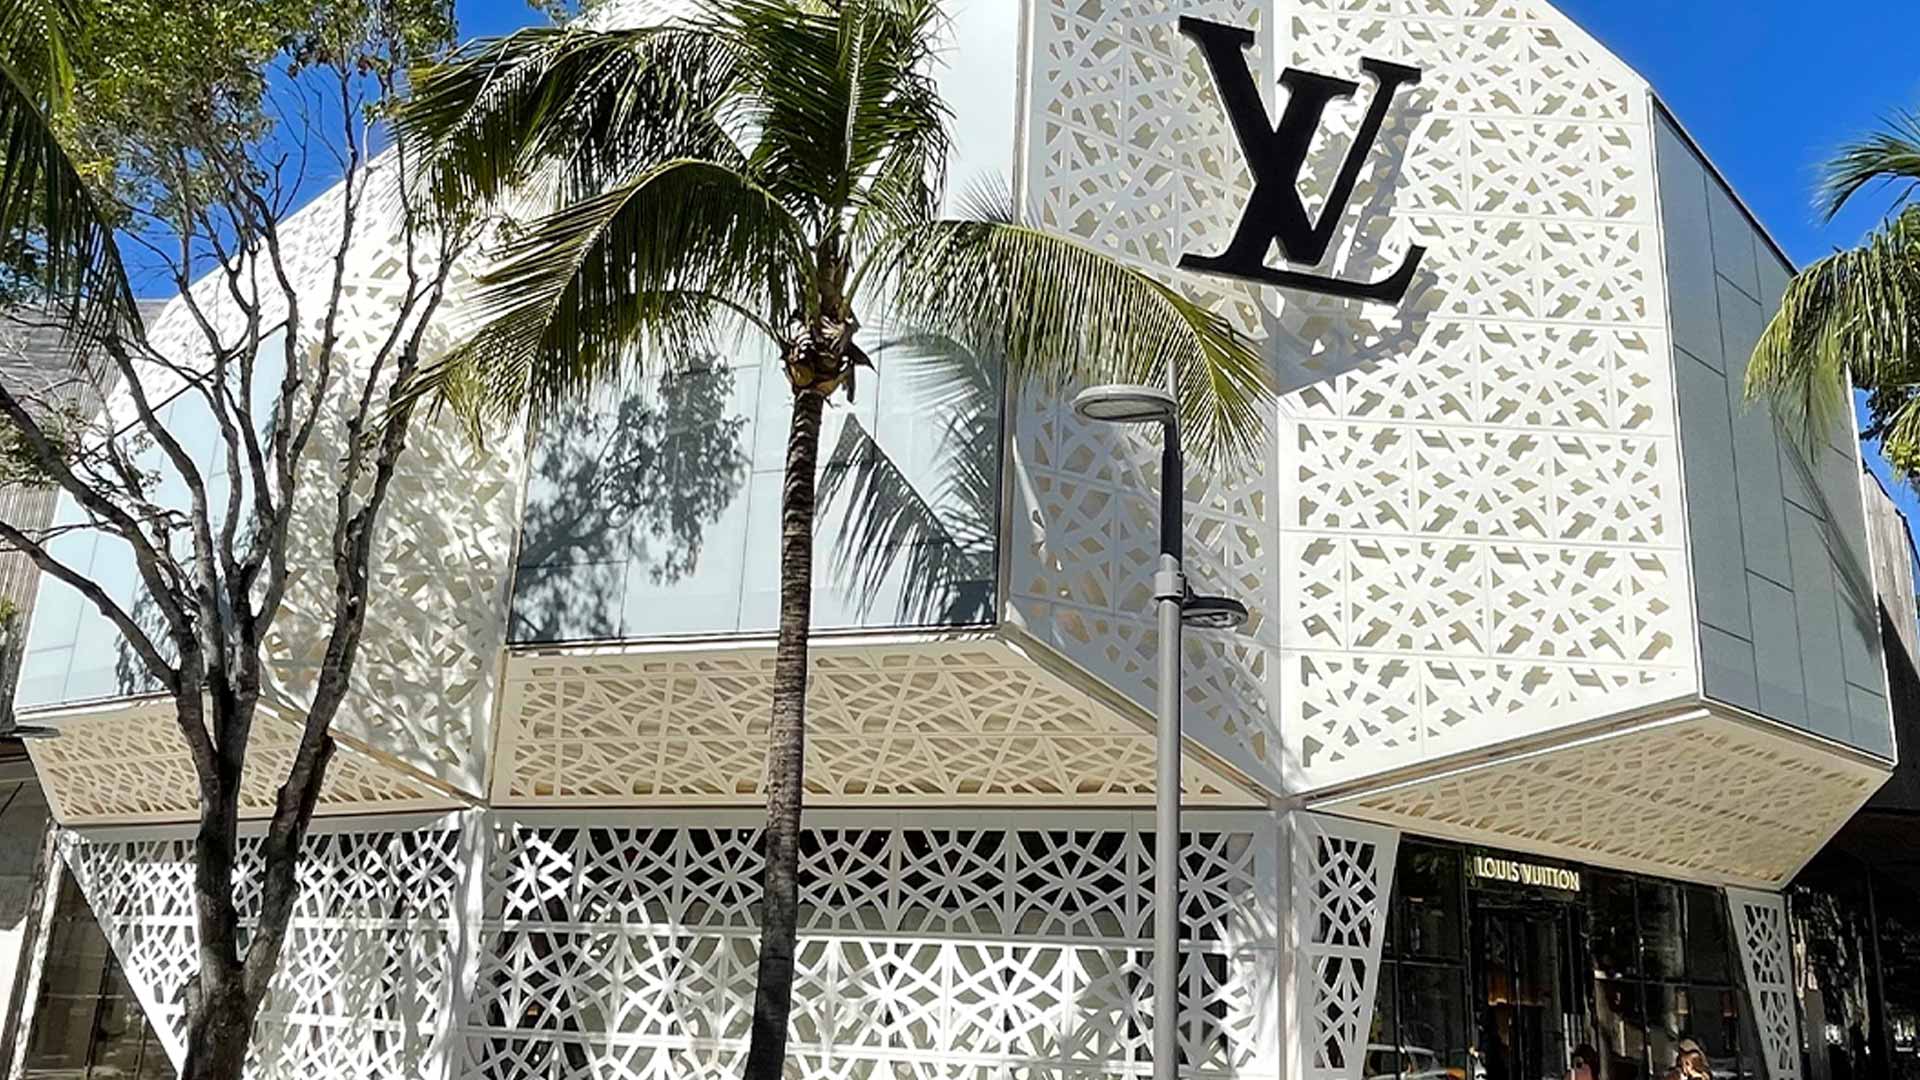 La boutique Vuitton des ChampsElysées est transformée   Paris ZigZag   Insolite  Secret